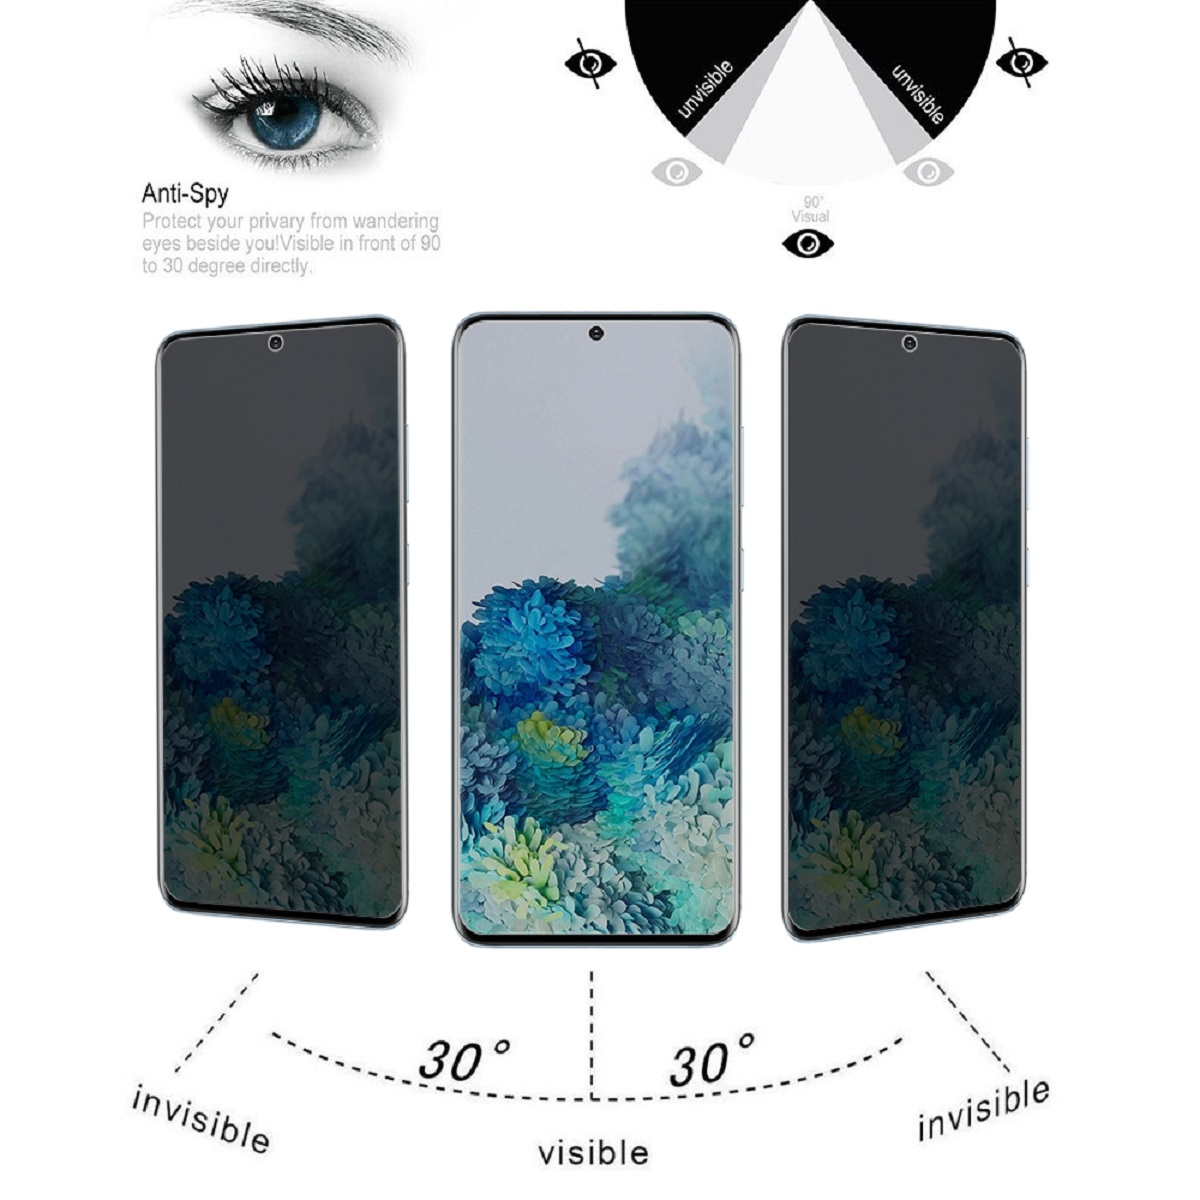 Schutzglas Galaxy ANTI-SPY CURVED FULL PRIVACY PROTECTORKING Displayschutzfolie(für Samsung 1x 9H S20)